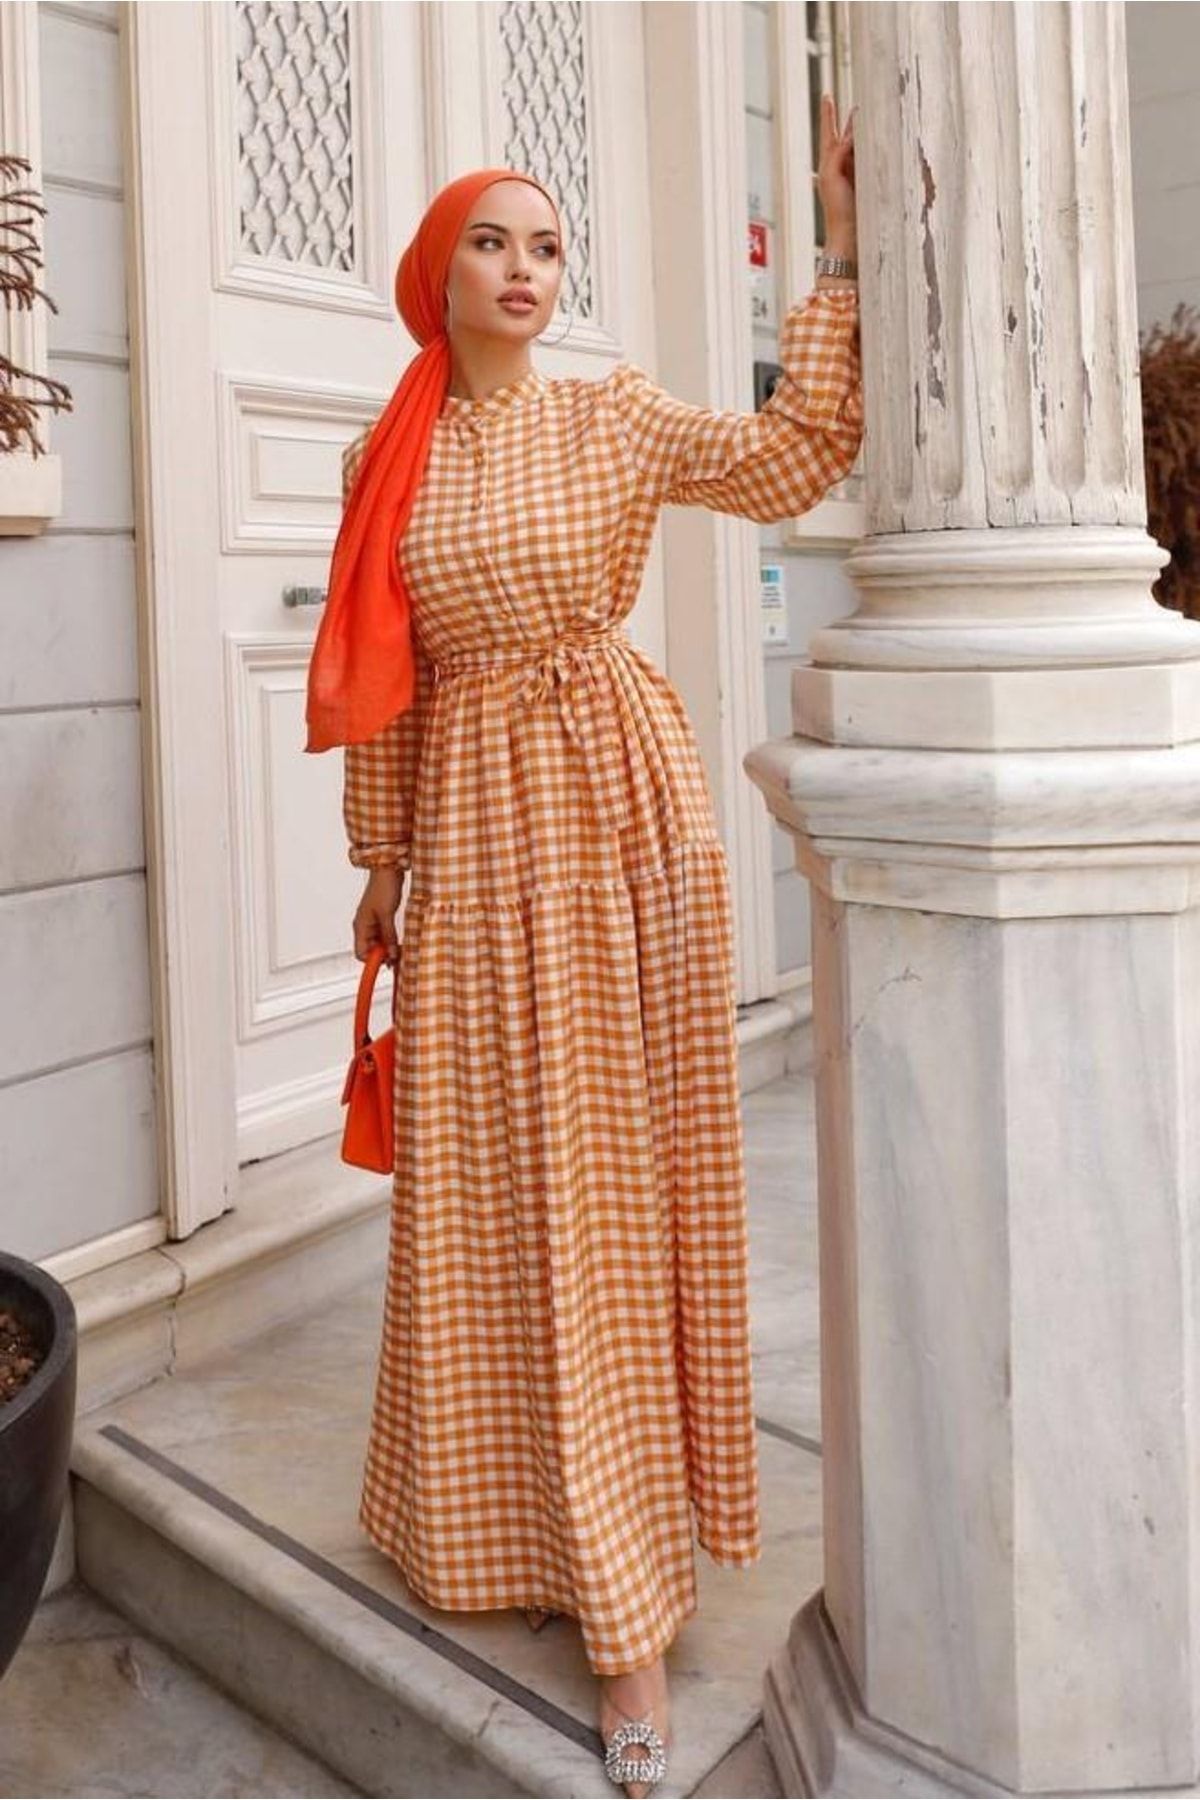 comstar Kadın Kare Desenli Kol Büzgülü Elbise